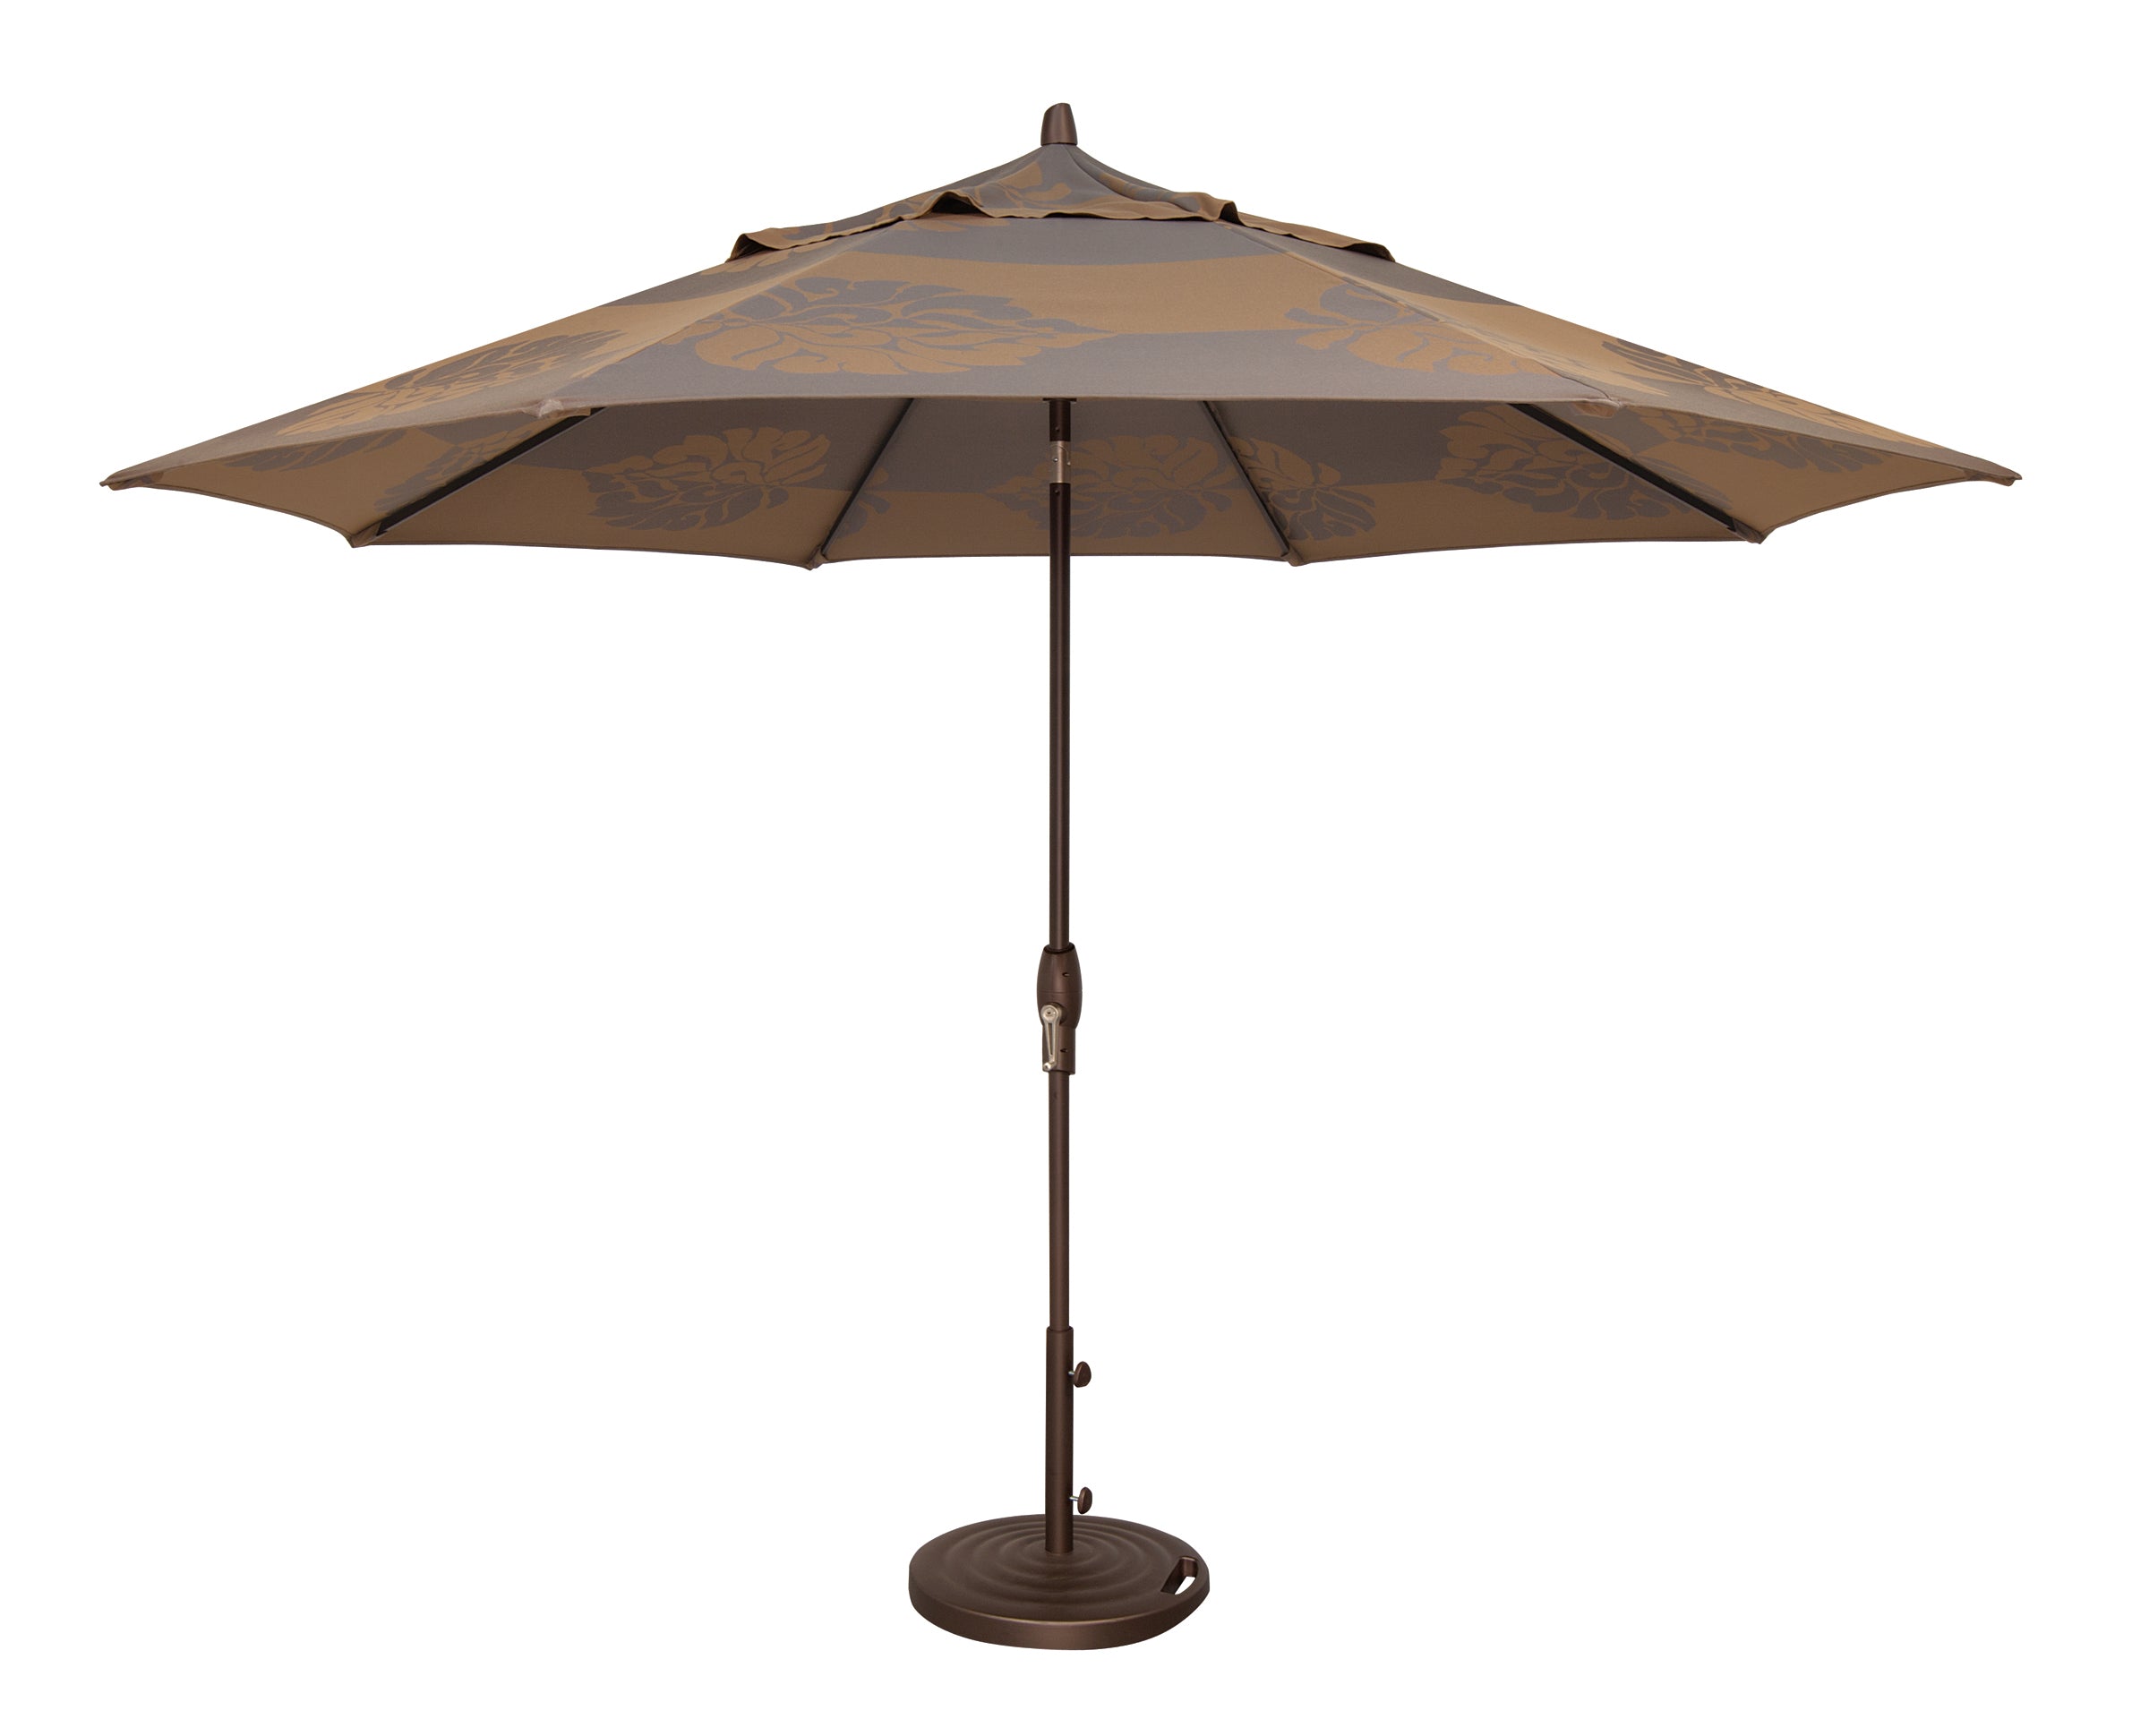 Treasure Garden 9' Auto Tilt Octagon Umbrella, Bronze, Latte Macchiato Docri, Grade A Outdoor Umbrellas & Sunshade 12023952